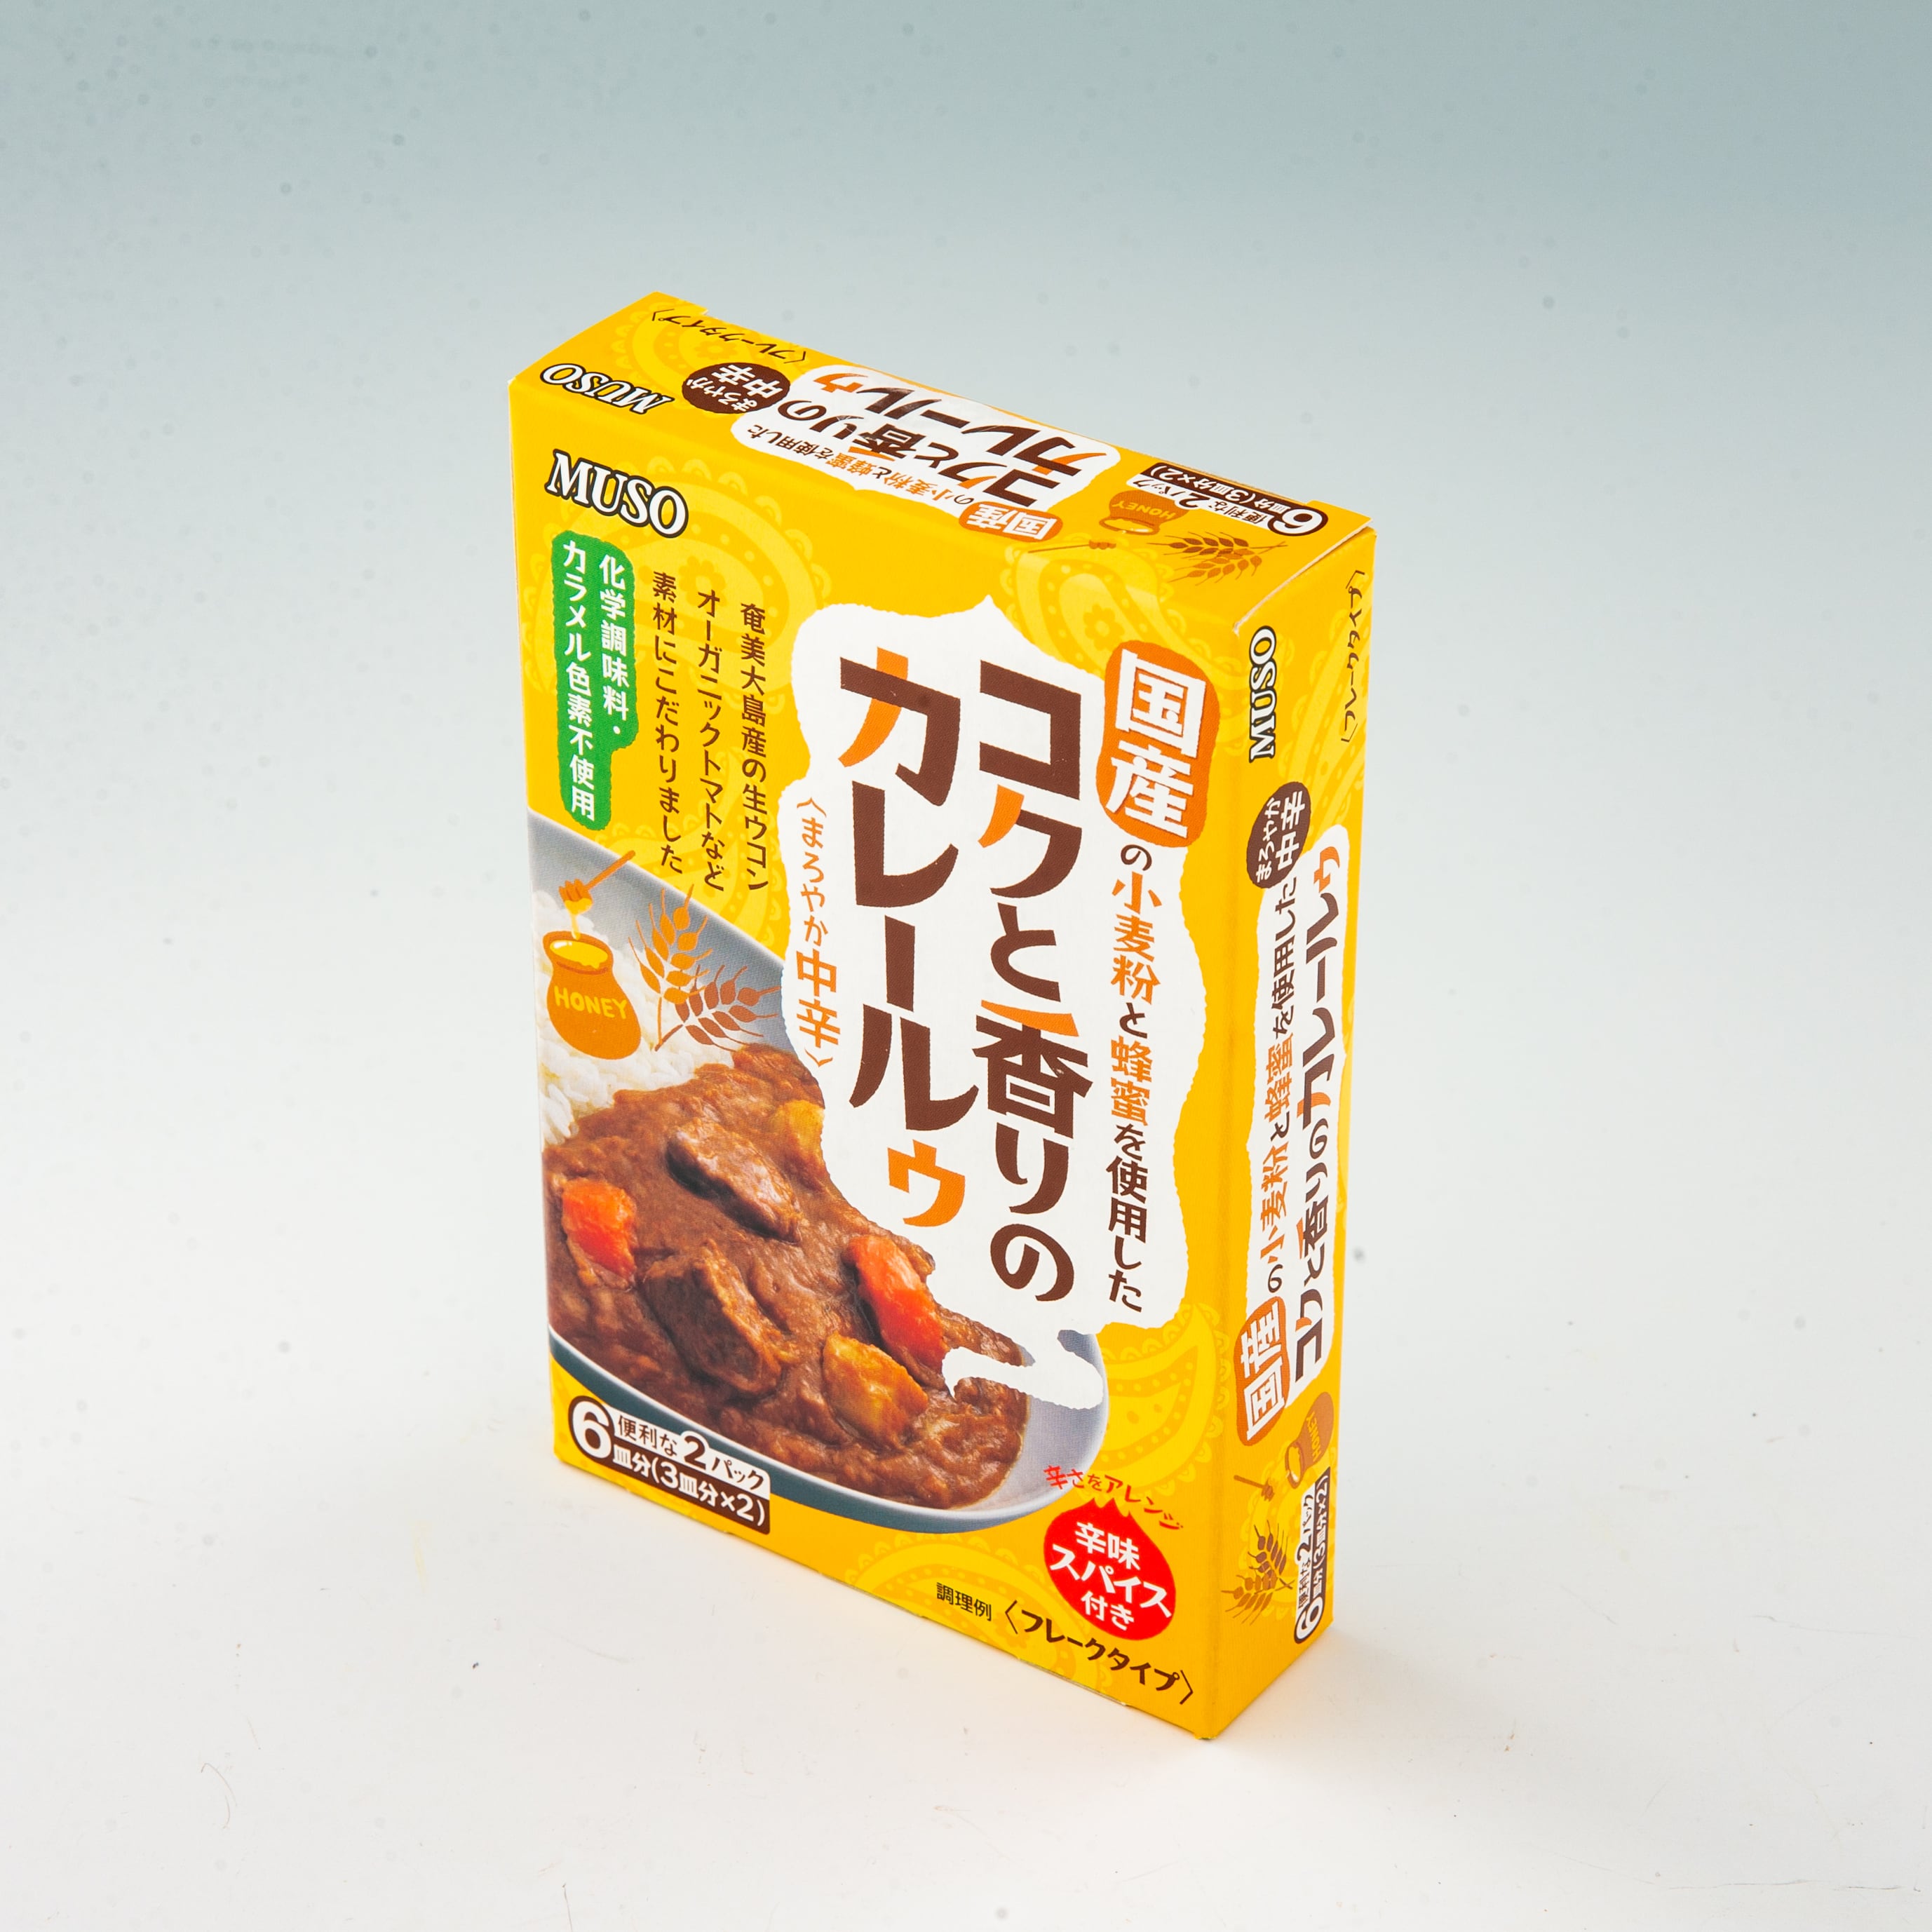 80g×2　公式オンラインショップ　ムソー　熊本からからだにやさしい商品を発送　コクと香りのカレールゥ・中辛　フードプラザにしだ